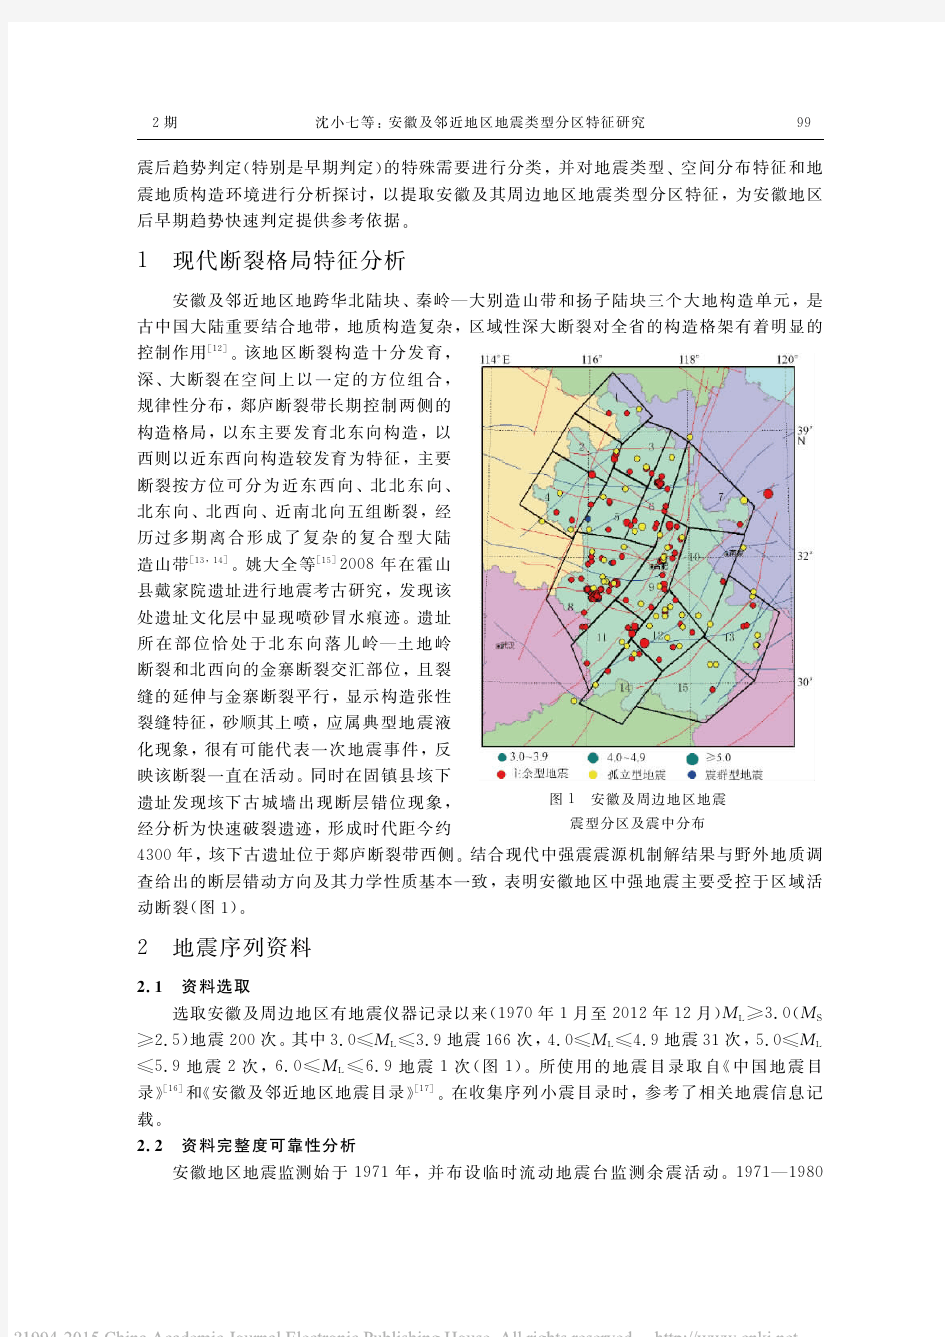 安徽及邻近地区地震类型分区特征研究_沈小七